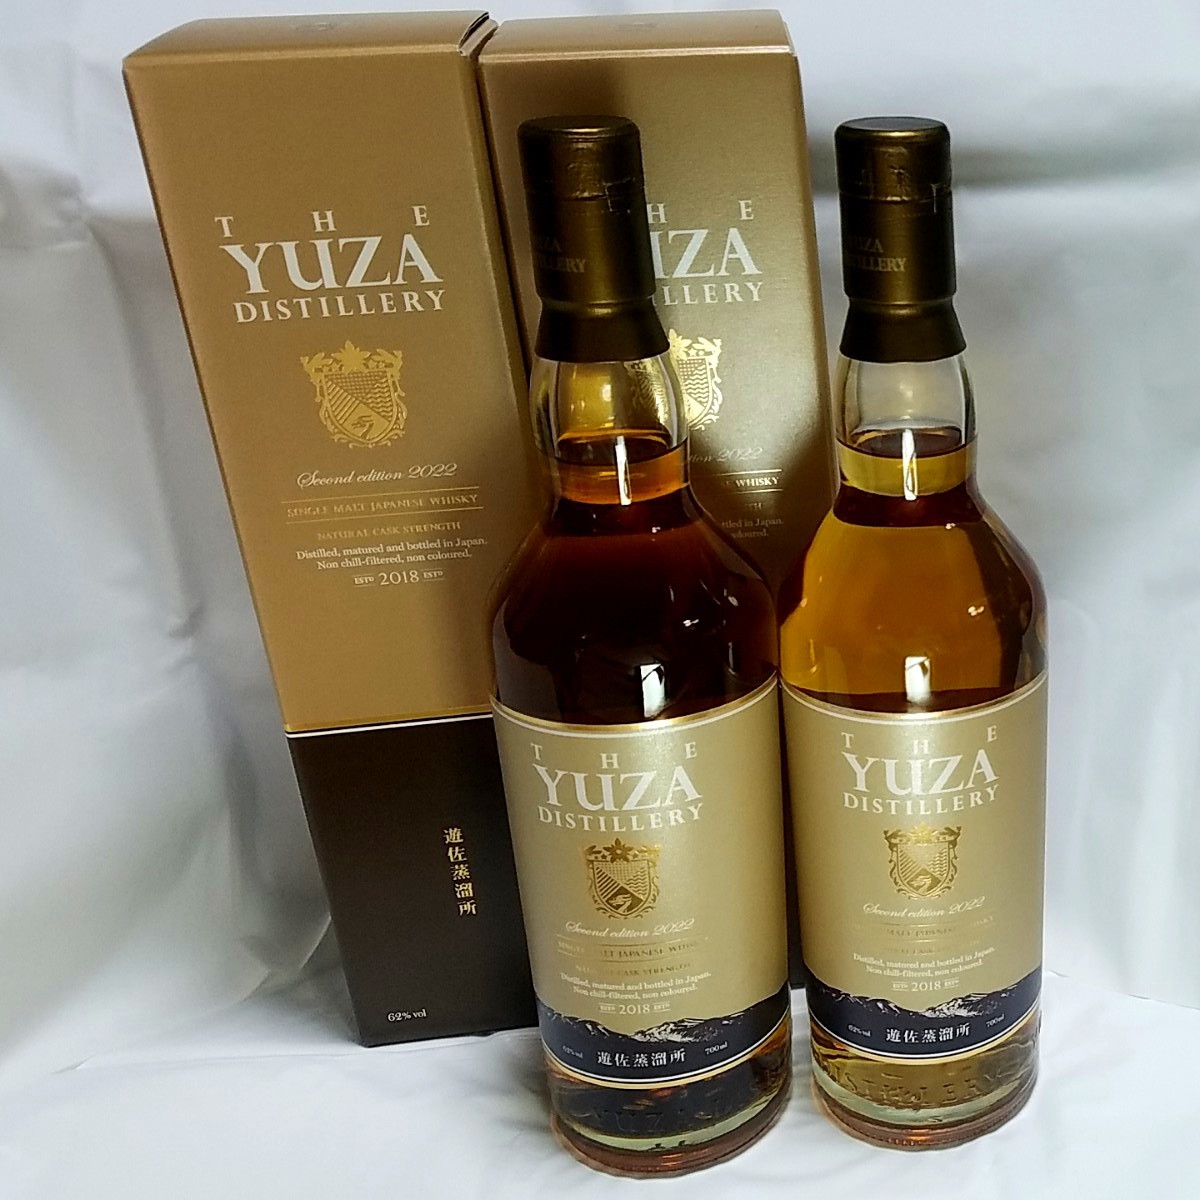 遊佐セカンドエディション YUZA Second Edition whisky 赤ワイン樽熟成